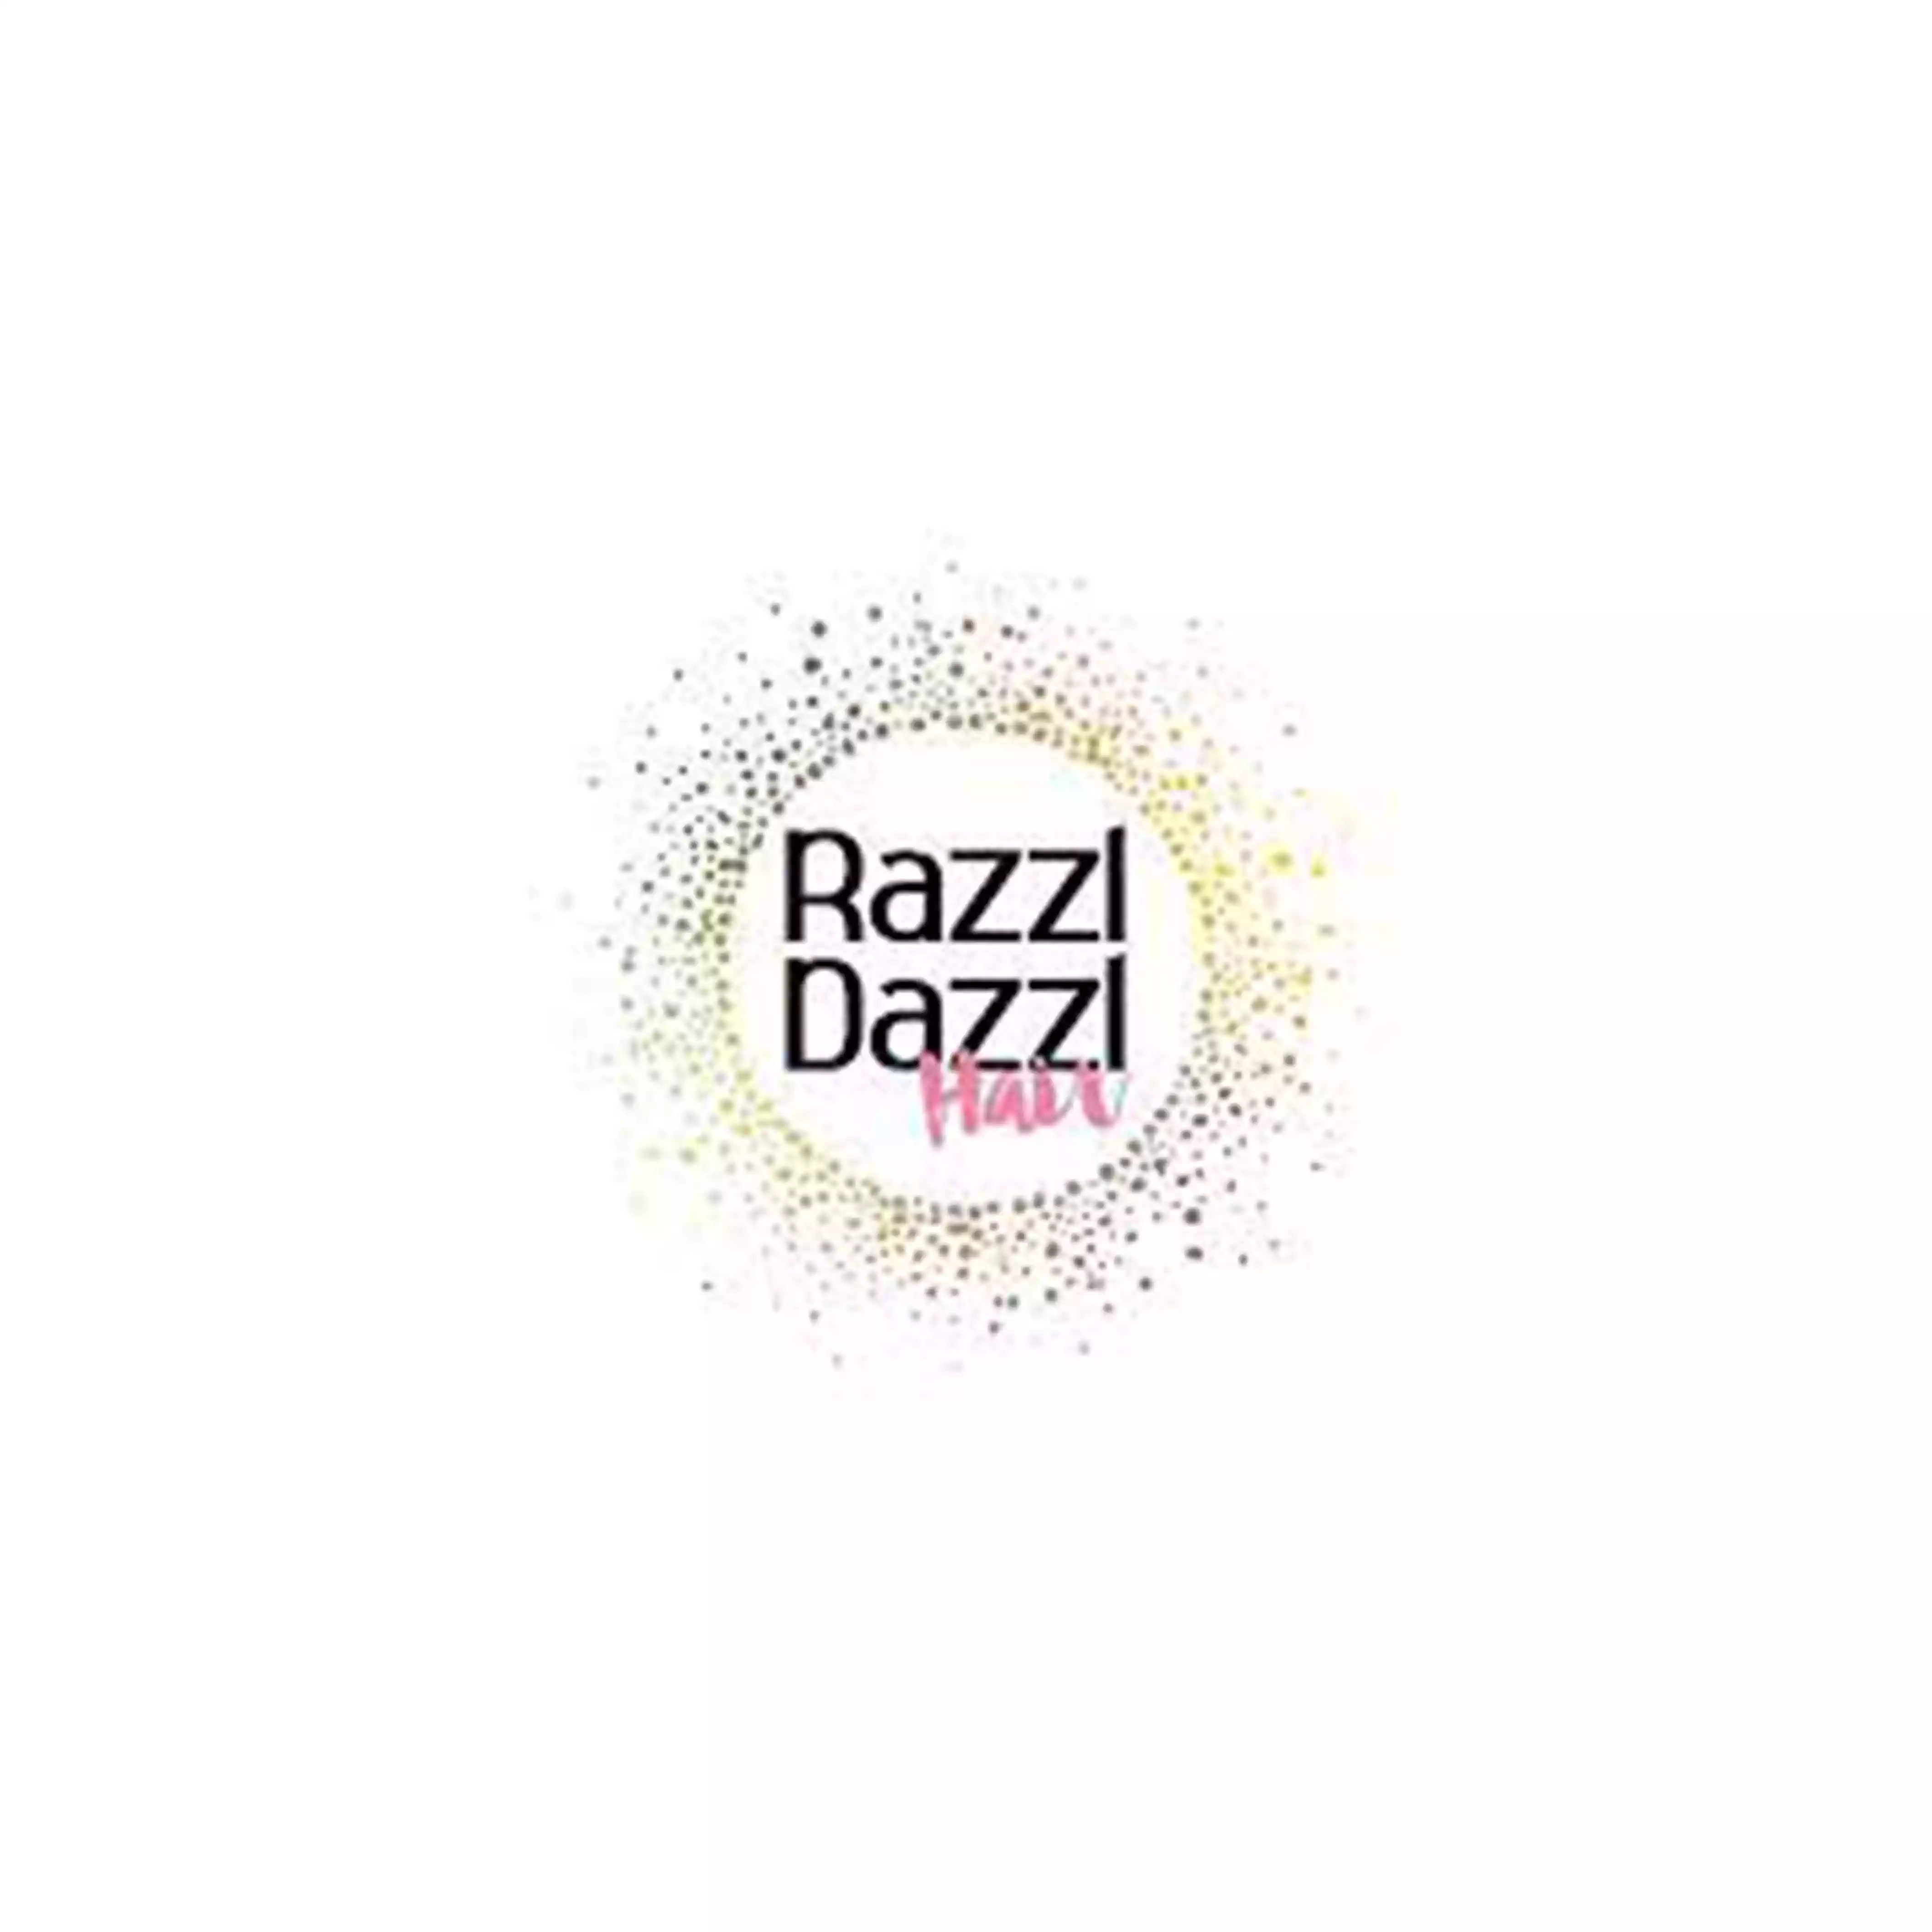 Razzl Dazzl promo codes